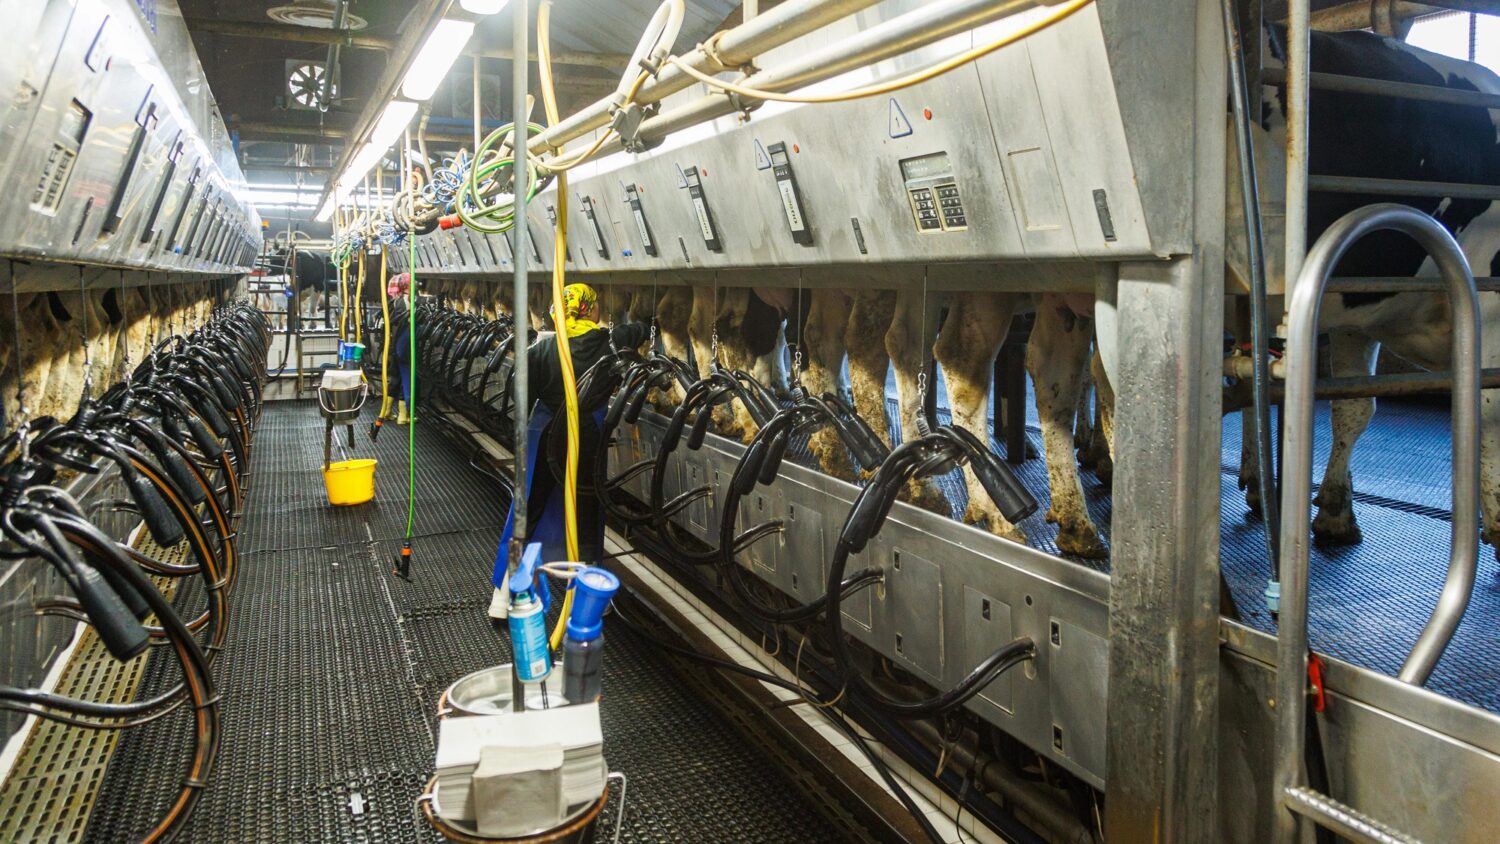 Üle kõige hindavad lehmad rutiini. Nende sisemine kell teab täpselt, millal jõuab kätte lüpsiaeg. Foto: Arvo Meeks, Lõuna-Eesti Postimees / Scanpix